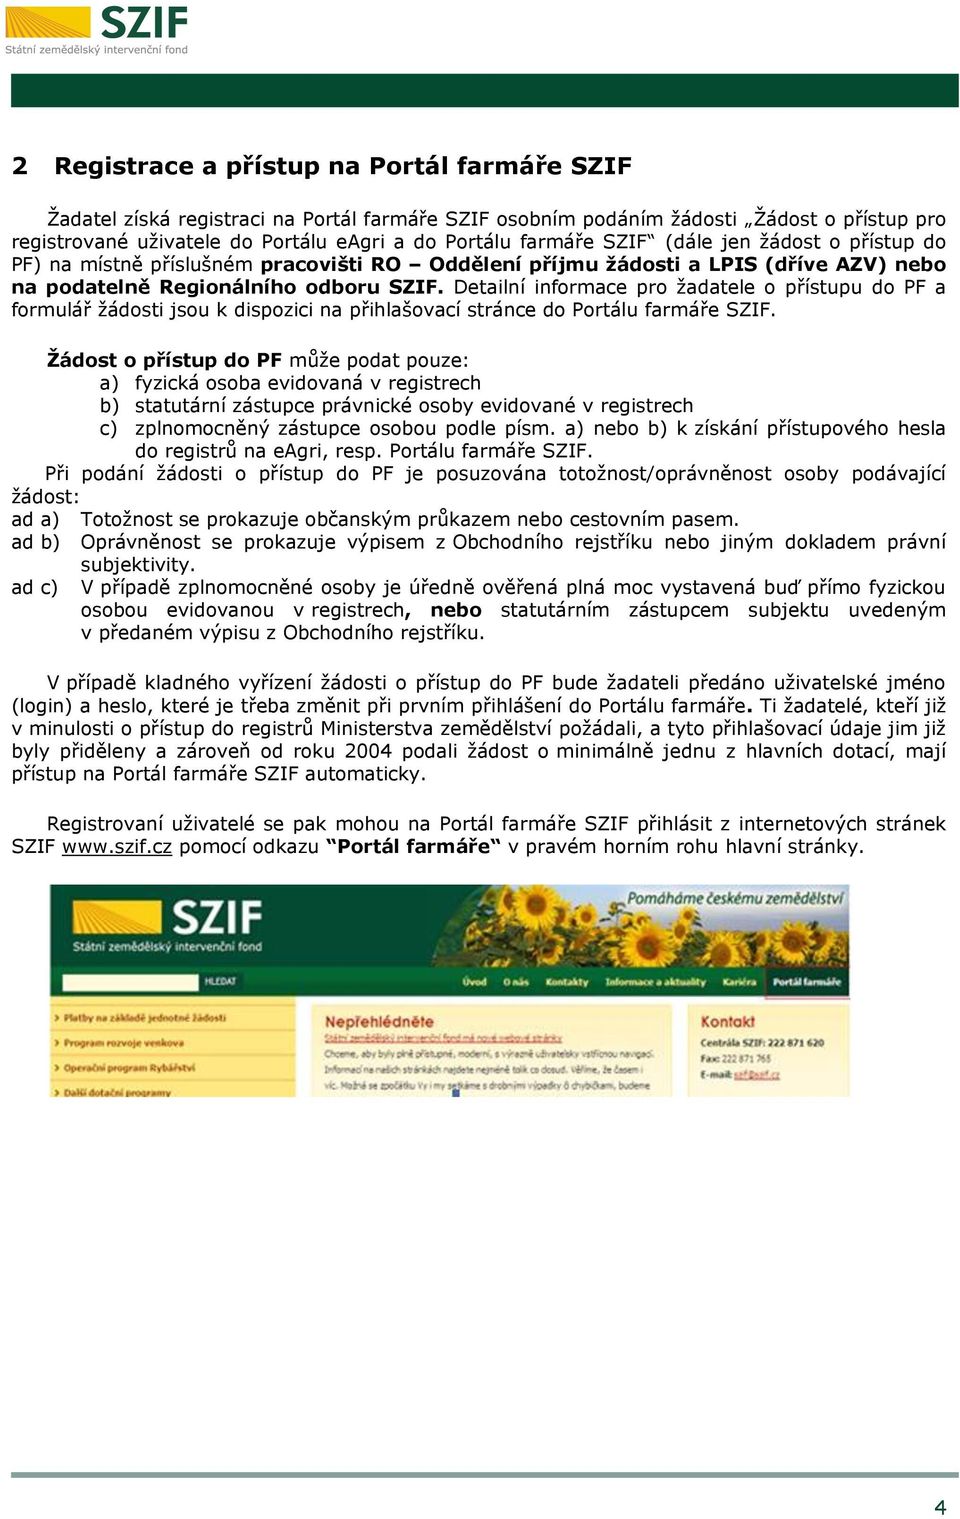 Detailní informace pro žadatele o přístupu do PF a formulář žádosti jsou k dispozici na přihlašovací stránce do Portálu farmáře SZIF.